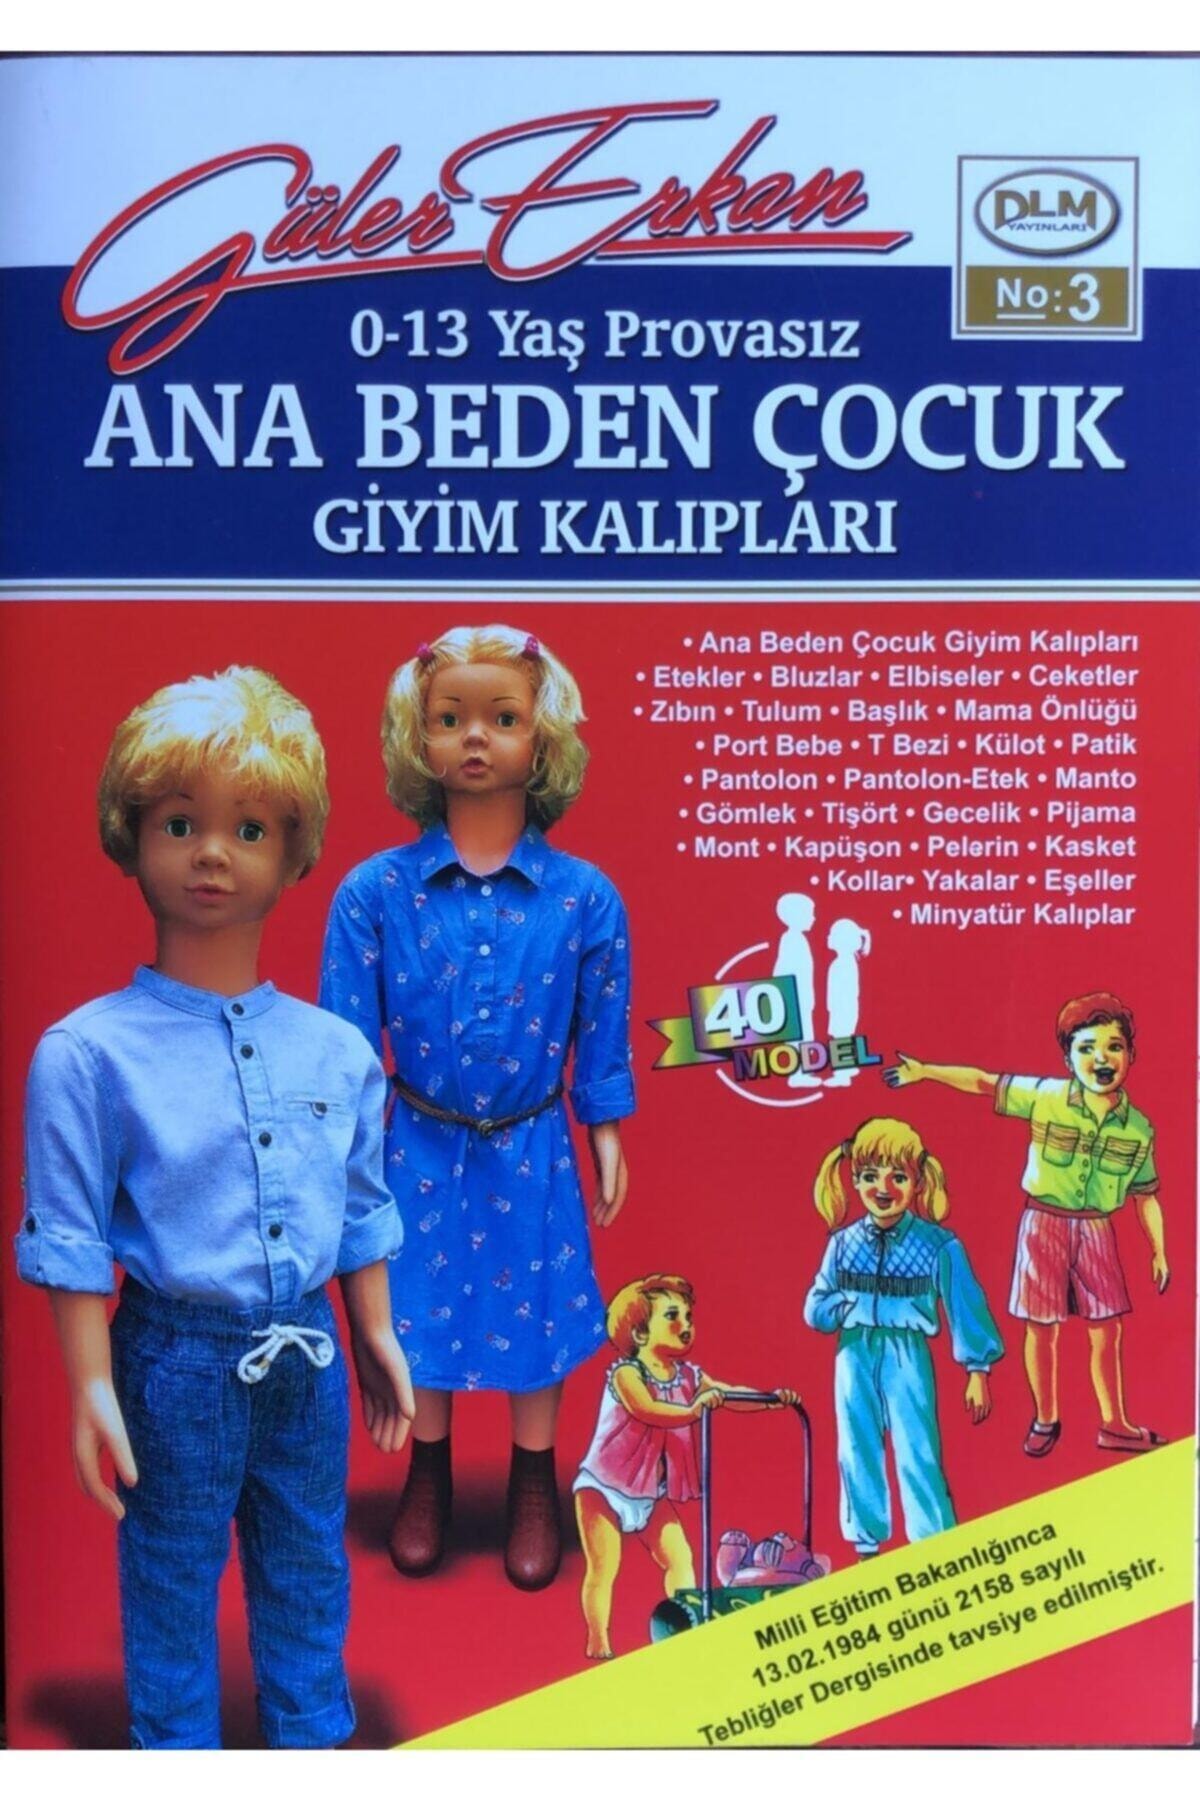 Dilem Yayınları Güler Erkan Provasız Çocuk Giyim Kalıpları (no 03) 0-13 Yaş